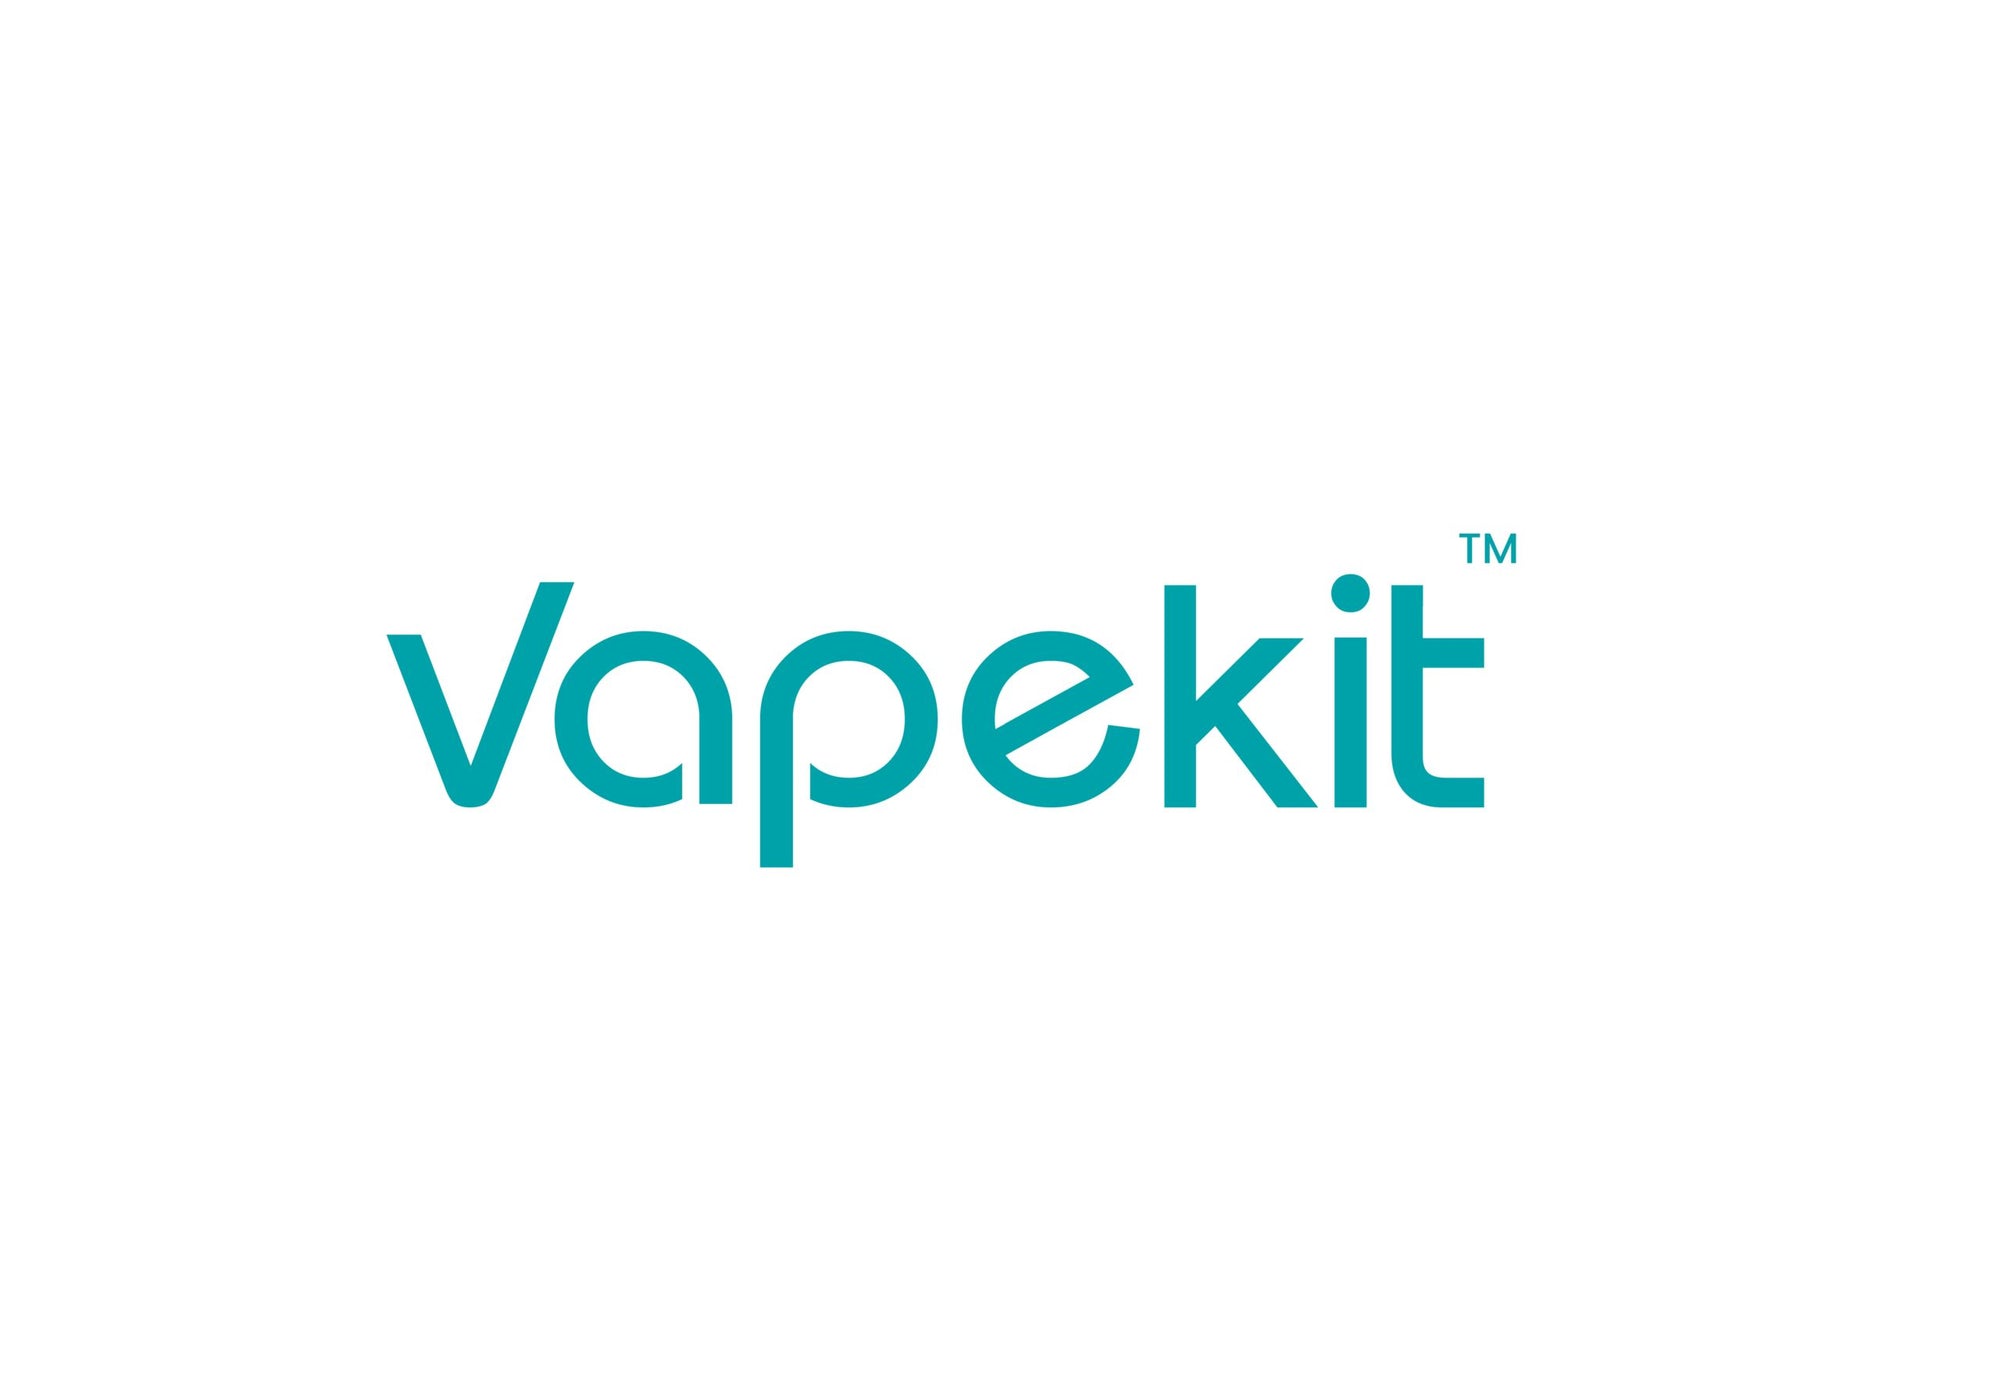 VapeKit.co.uk is the new home of online UK vape shop Vapester.co.uk